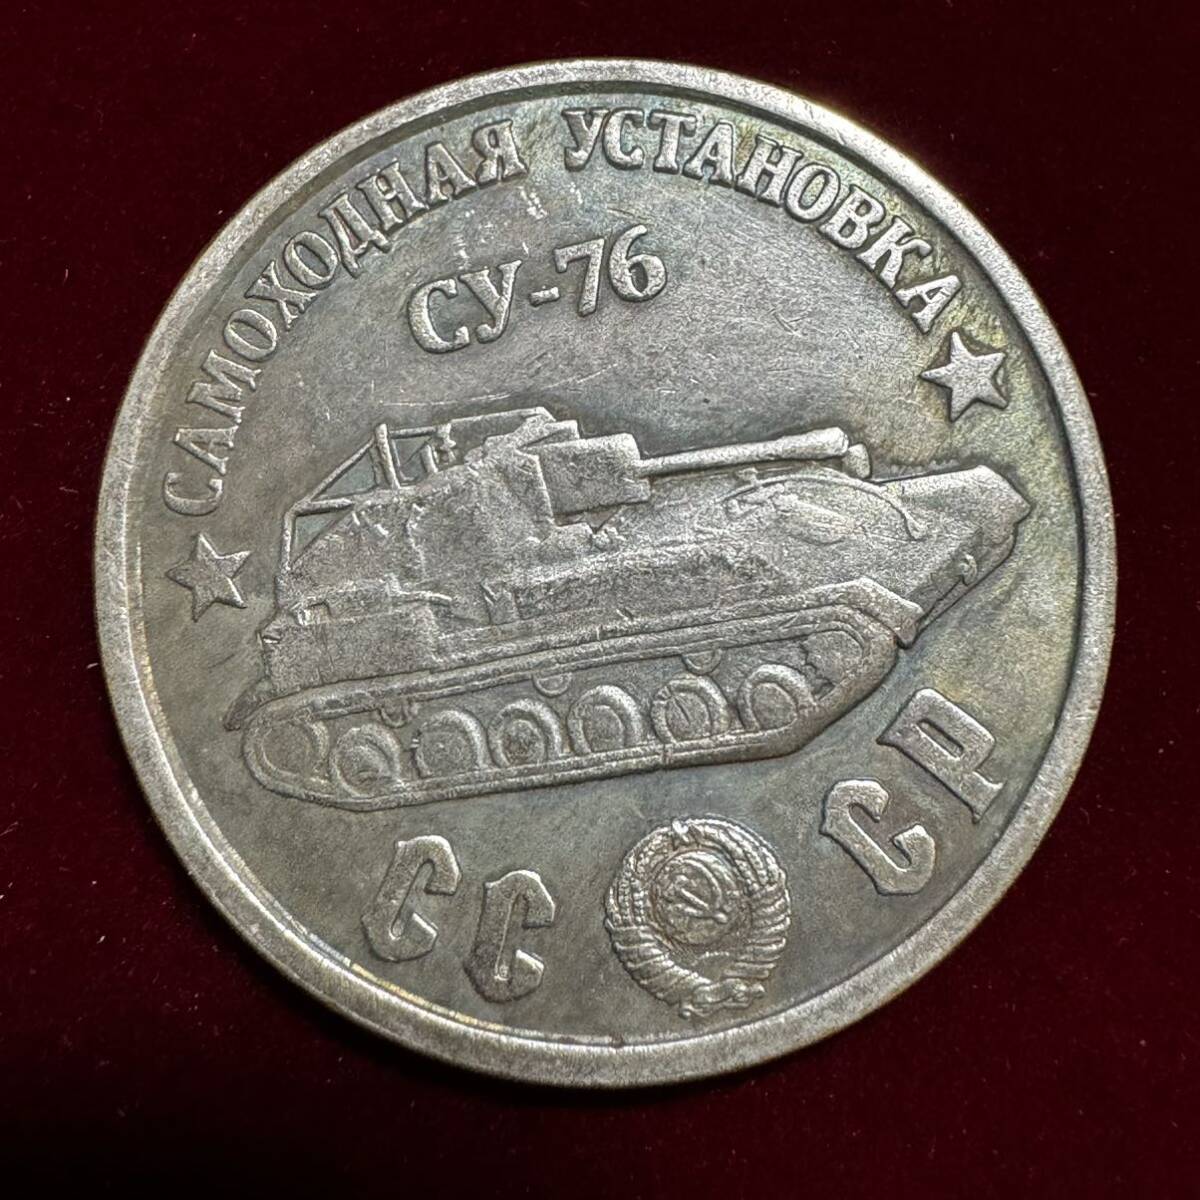 ロシア 硬貨 古銭 ソビエト連邦 戦車 記念幣 CY-76 クレムリン宮殿 コレクション コイン 外国古銭 海外硬貨 _画像1